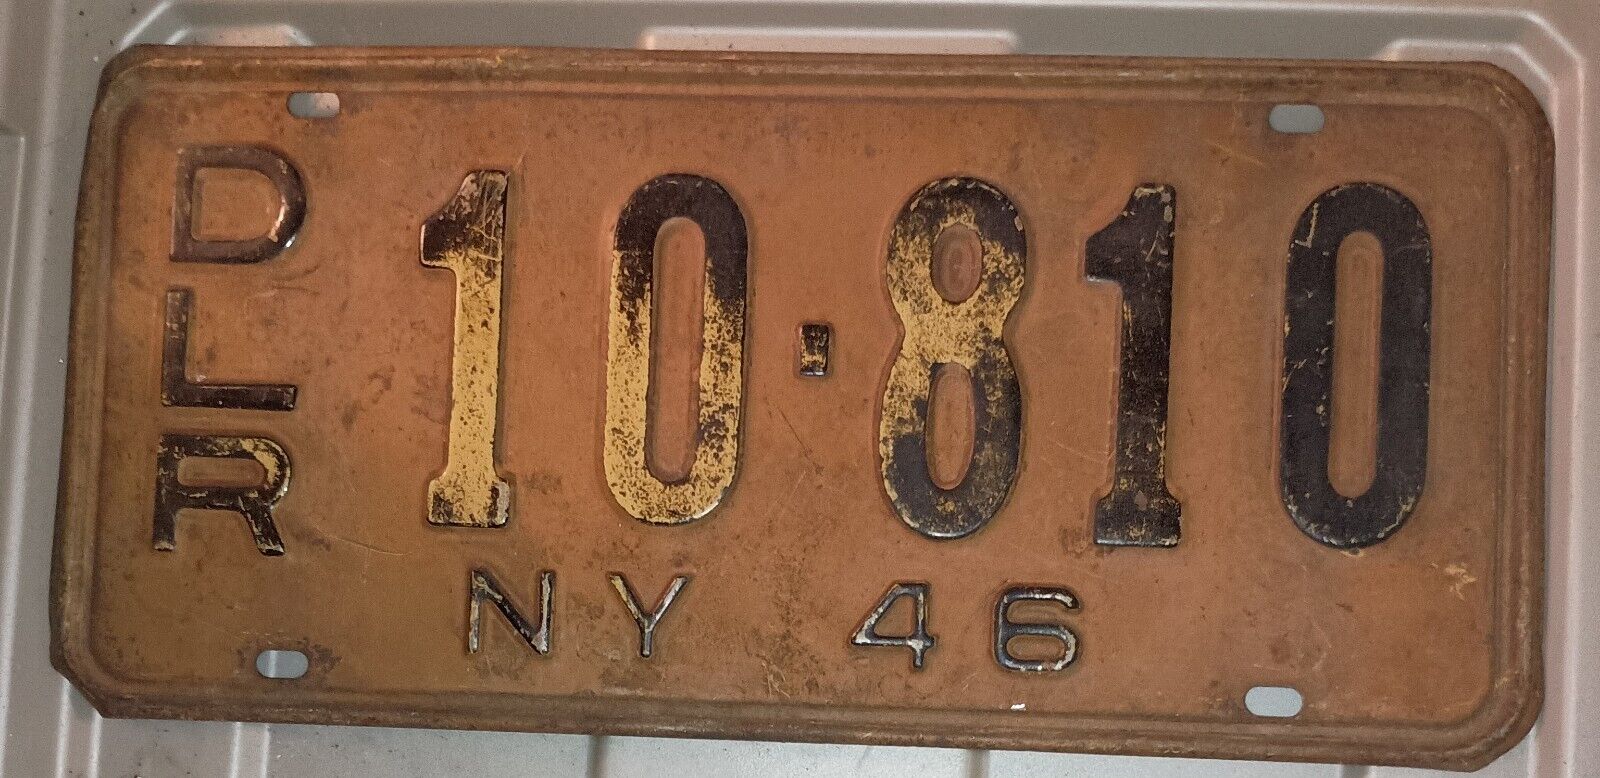 1946 New York Dealer License Plate